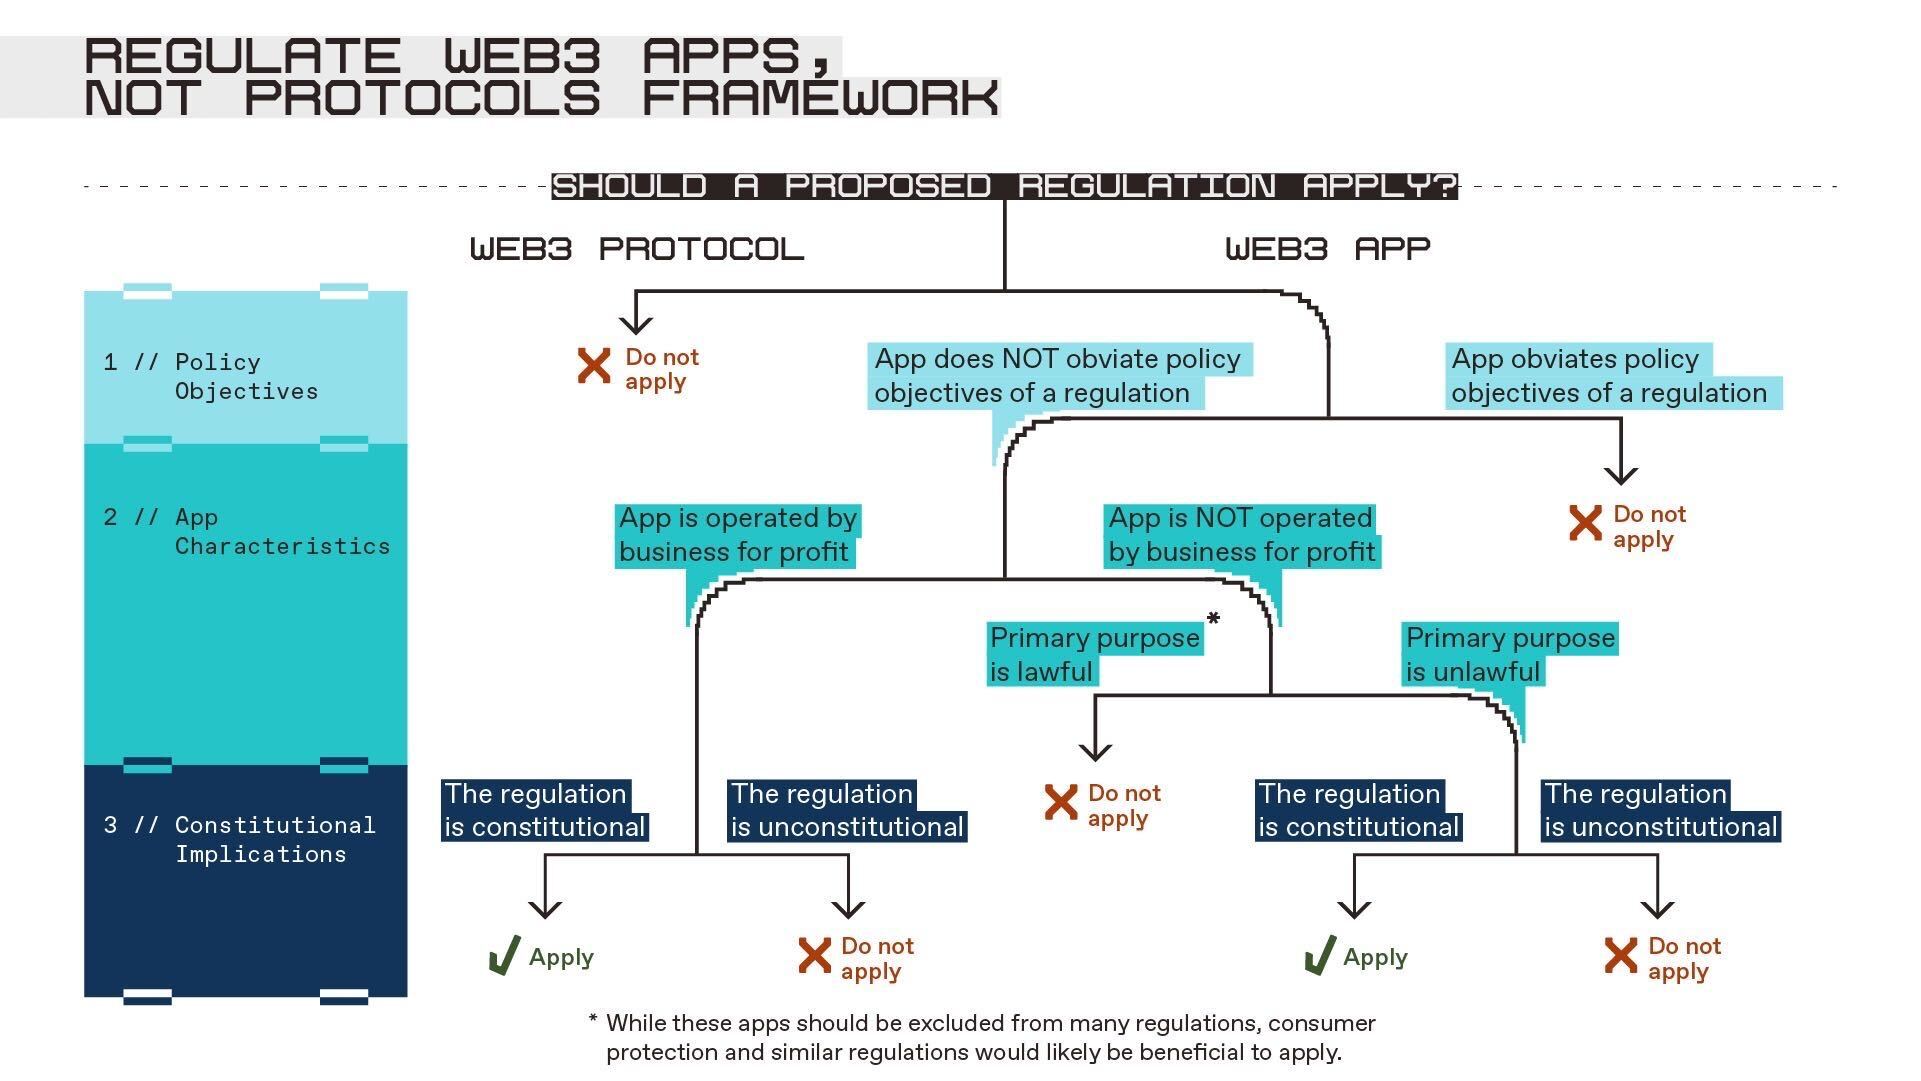 Regular aplicativos Web3, não protocolos Parte II: estrutura para regulamentar aplicativos Web3